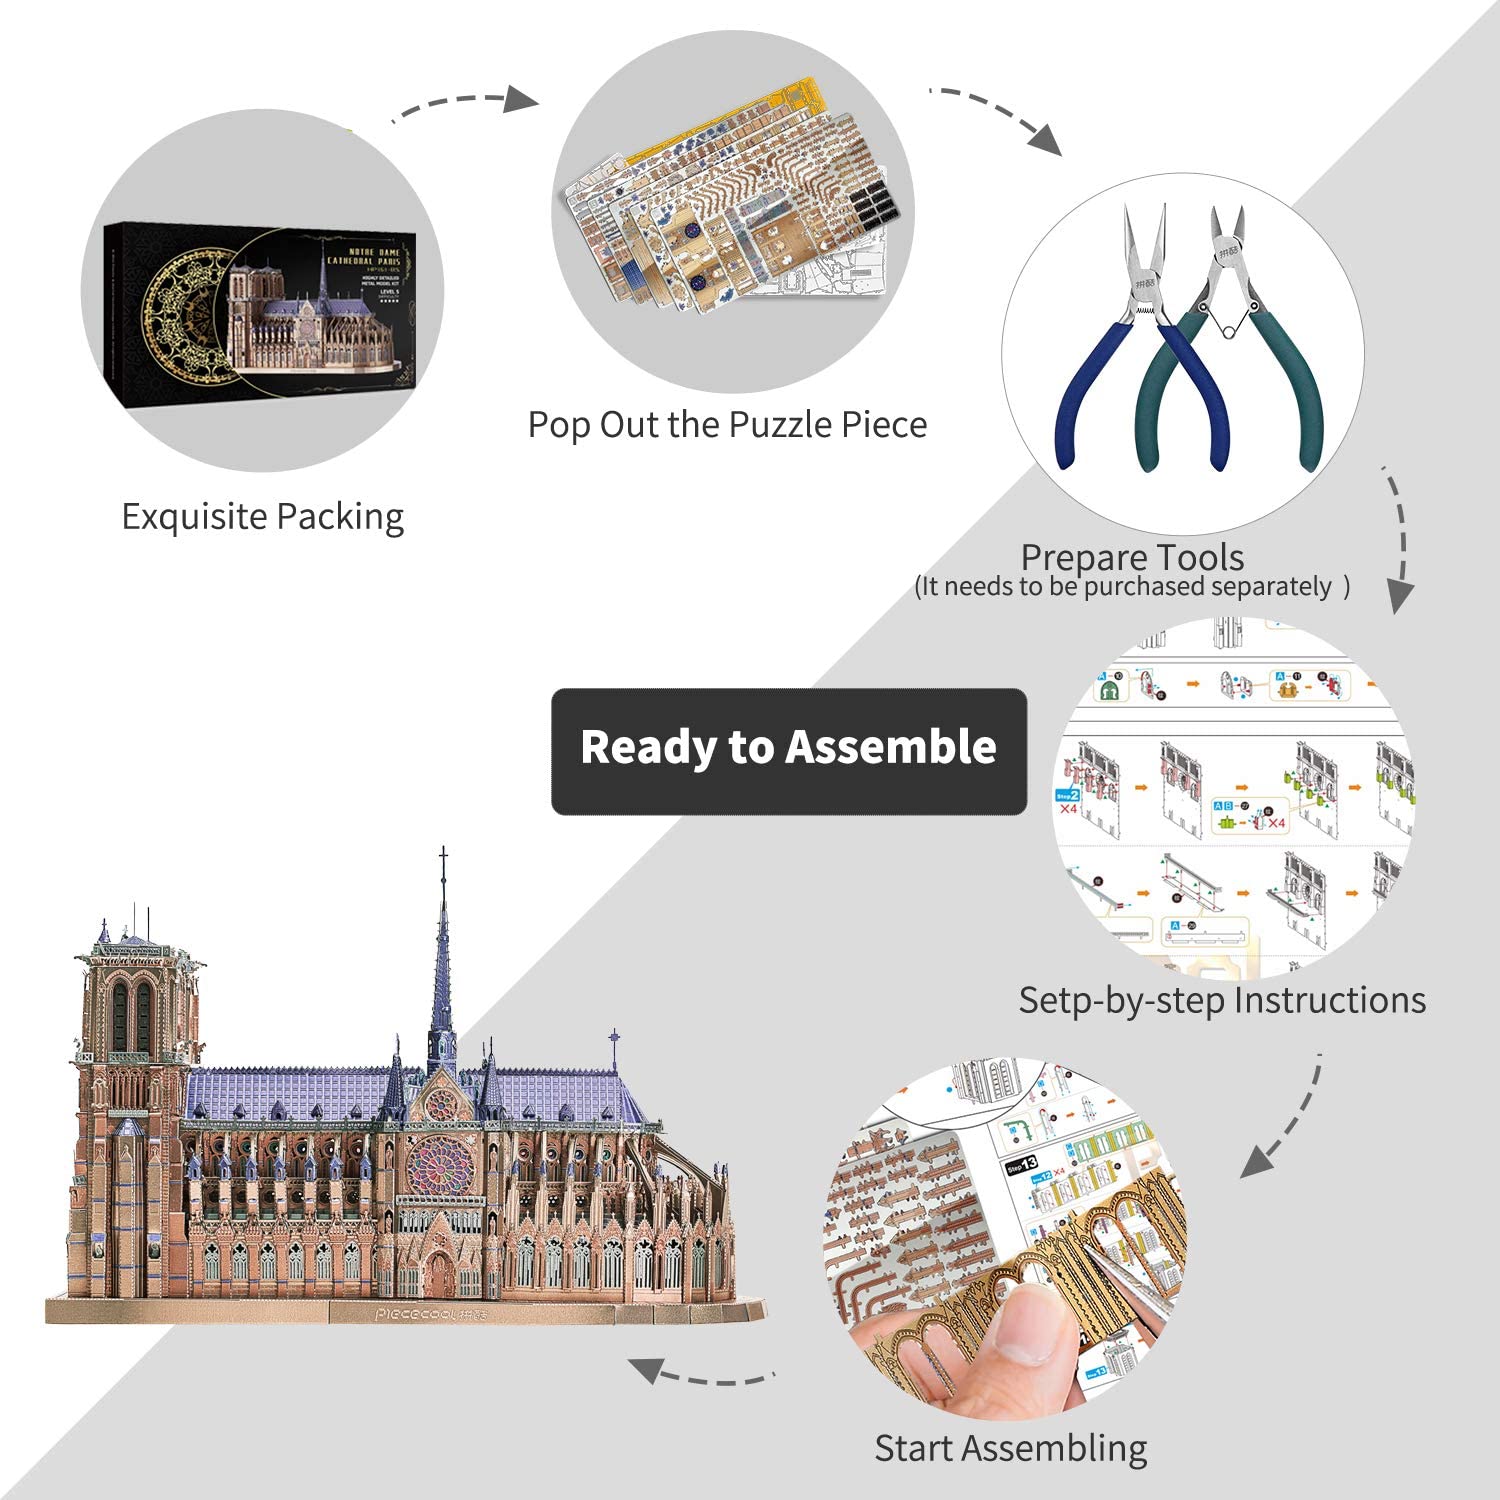 SmartBabyKid™ Notre Dame De Paris Church 3D Metal Model Kit